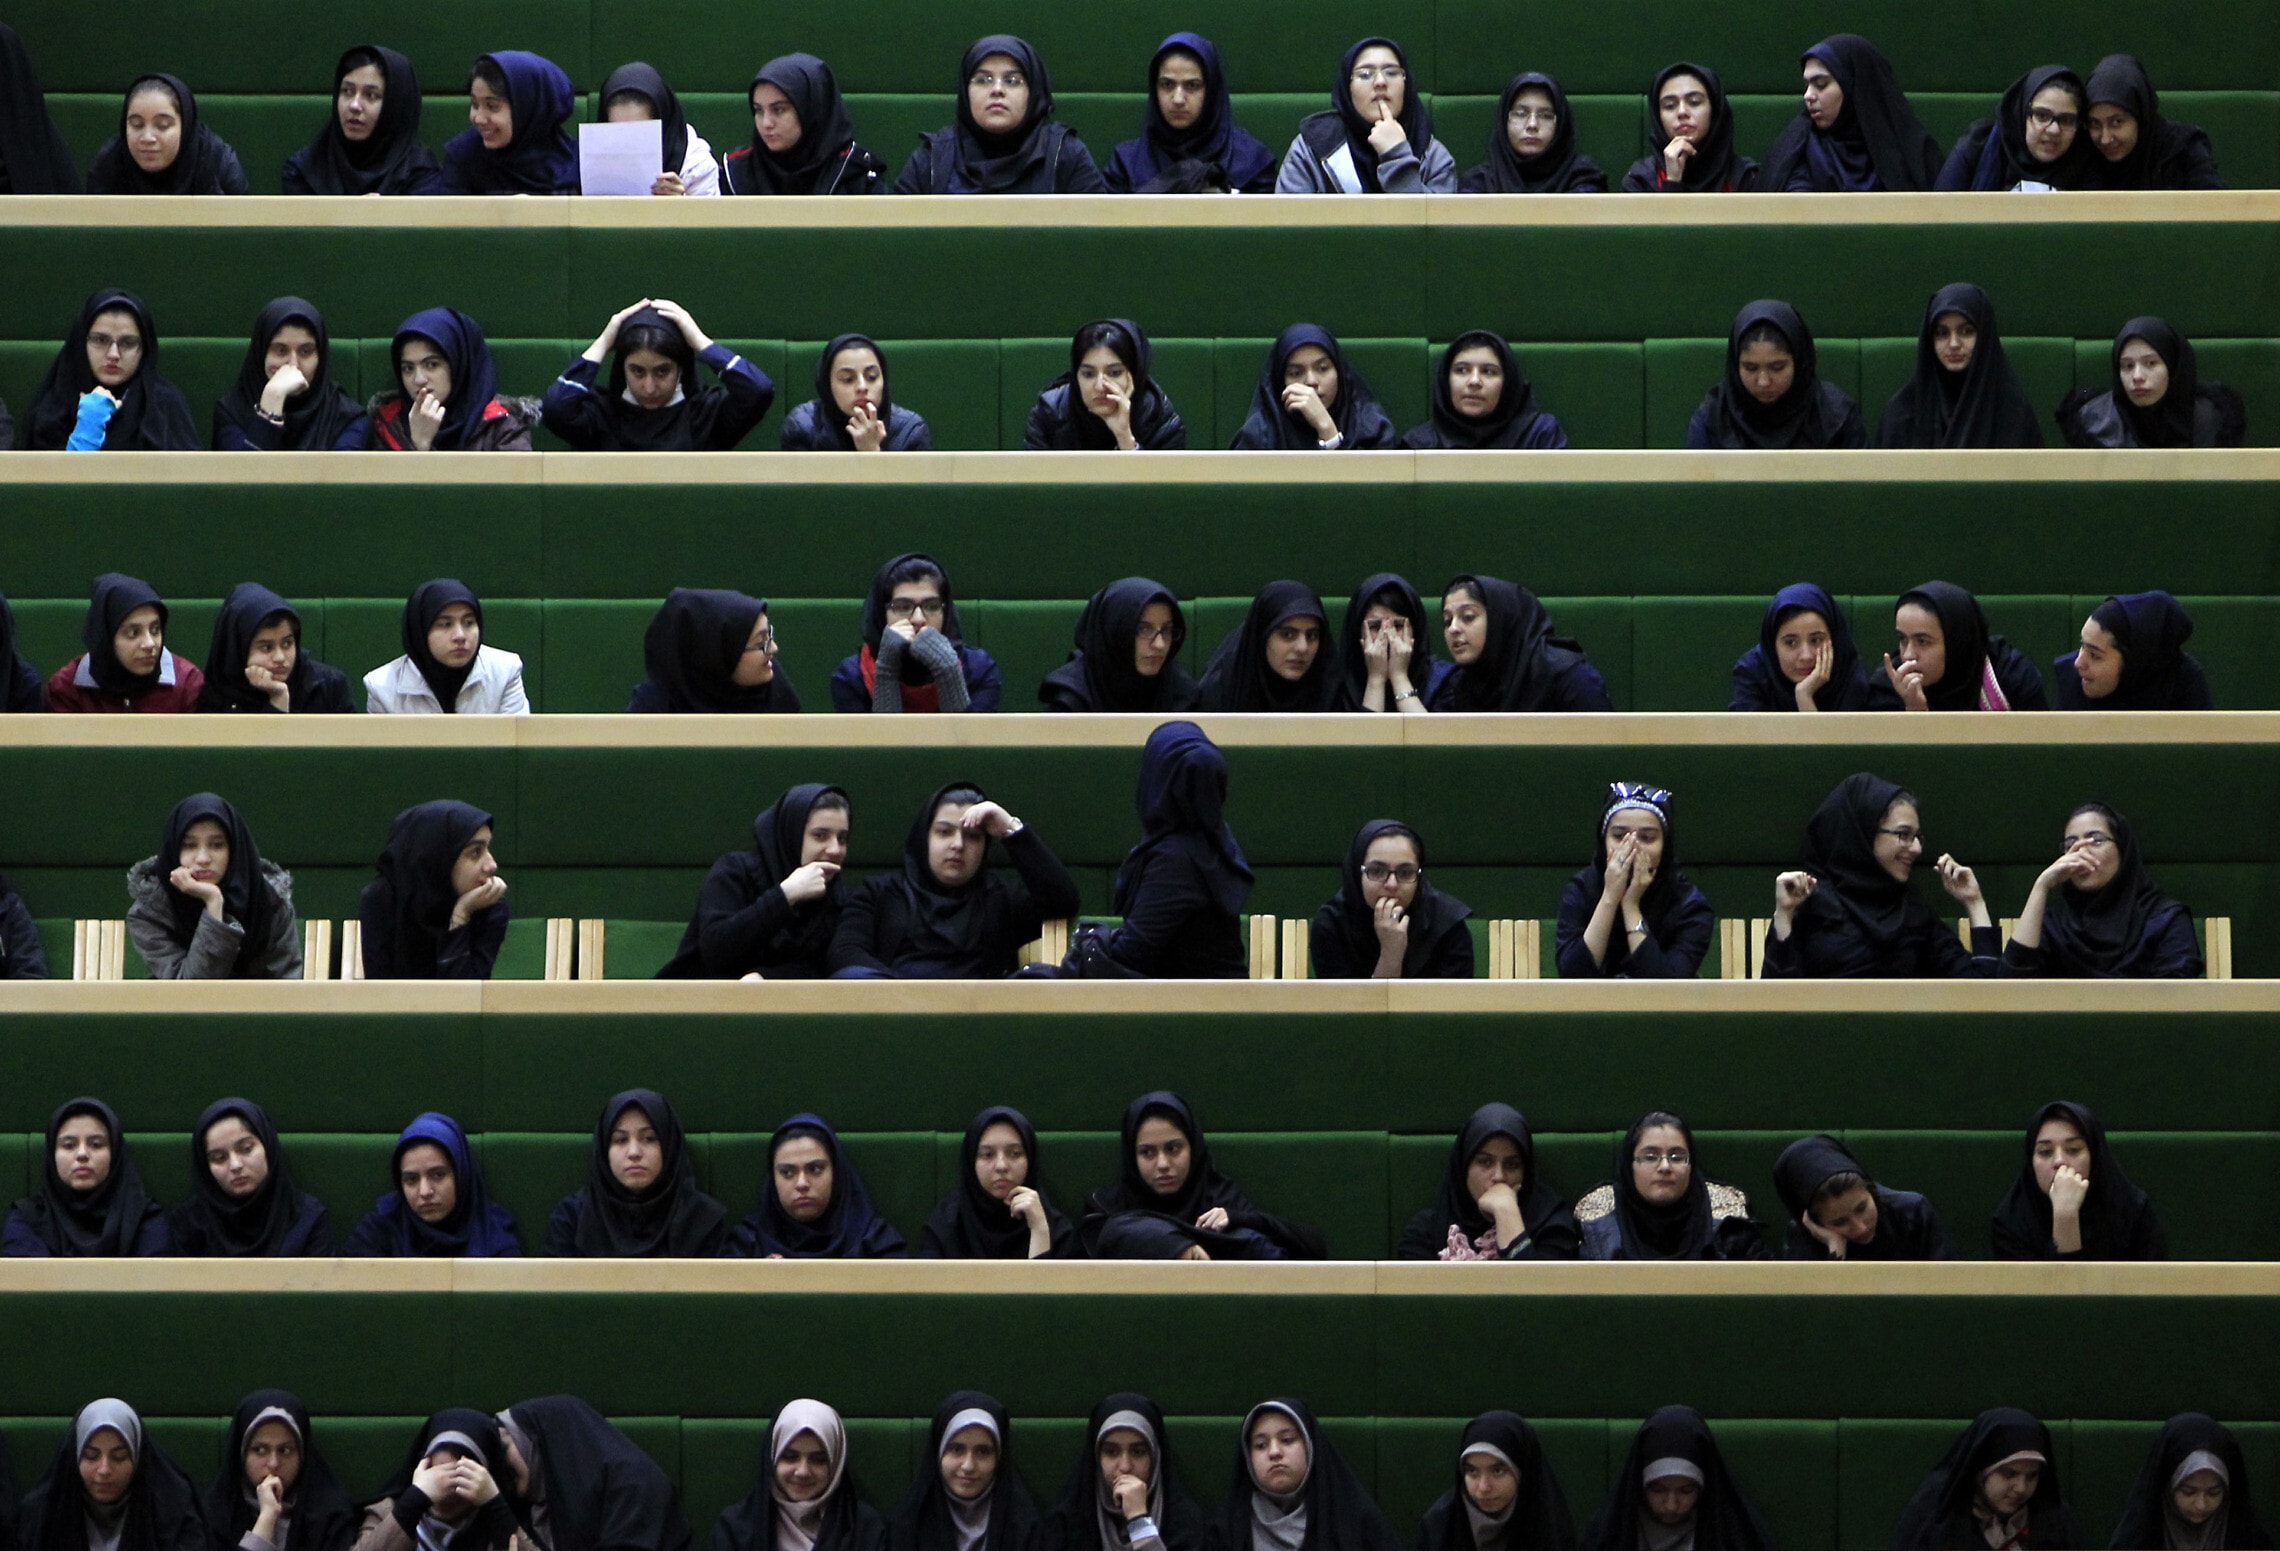 אילוסטרציה: תלמידות איראניות צופות בדיוני הפרלמנט, 2013 (צילום: AP Photo/Vahid Salemi)